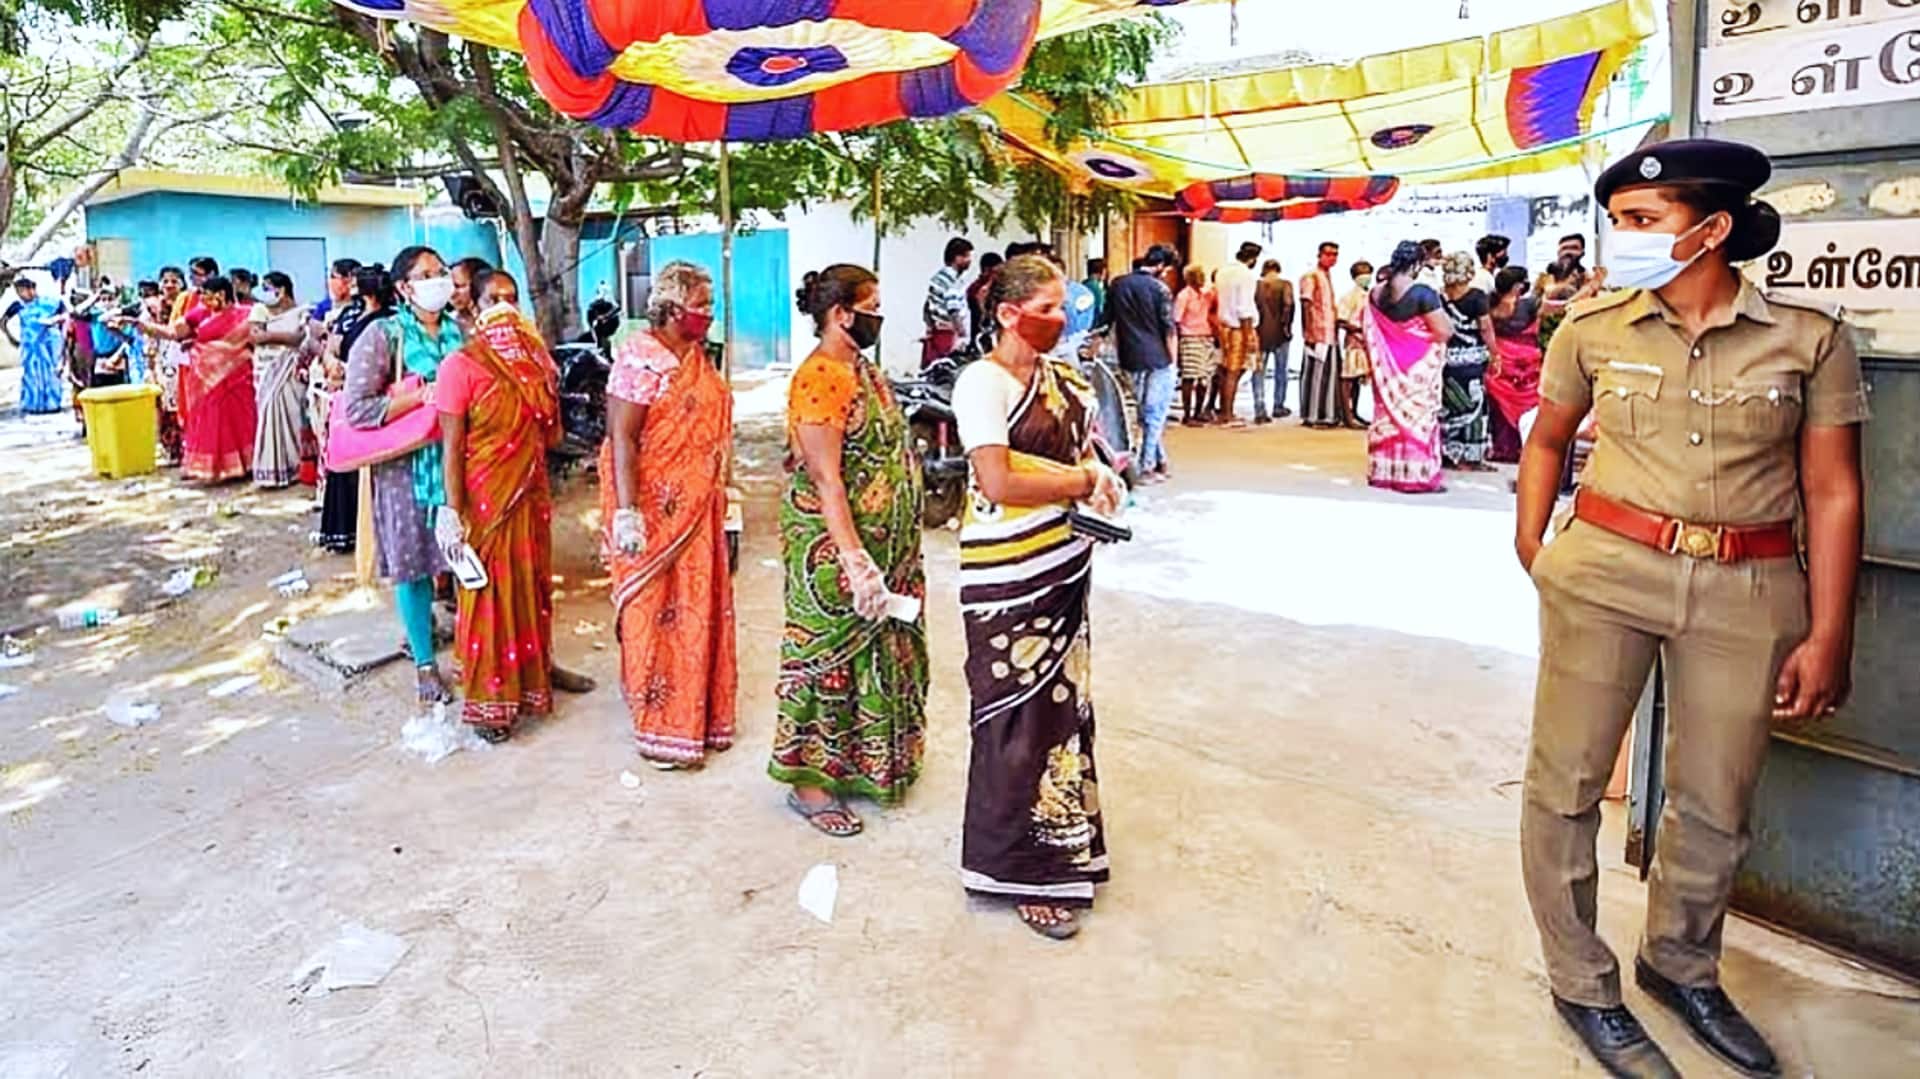 तमिलनाडु: मतदान के लिए चेन्नई से घर जाना चाहते थे लोग, बस न मिलने पर हंगामा